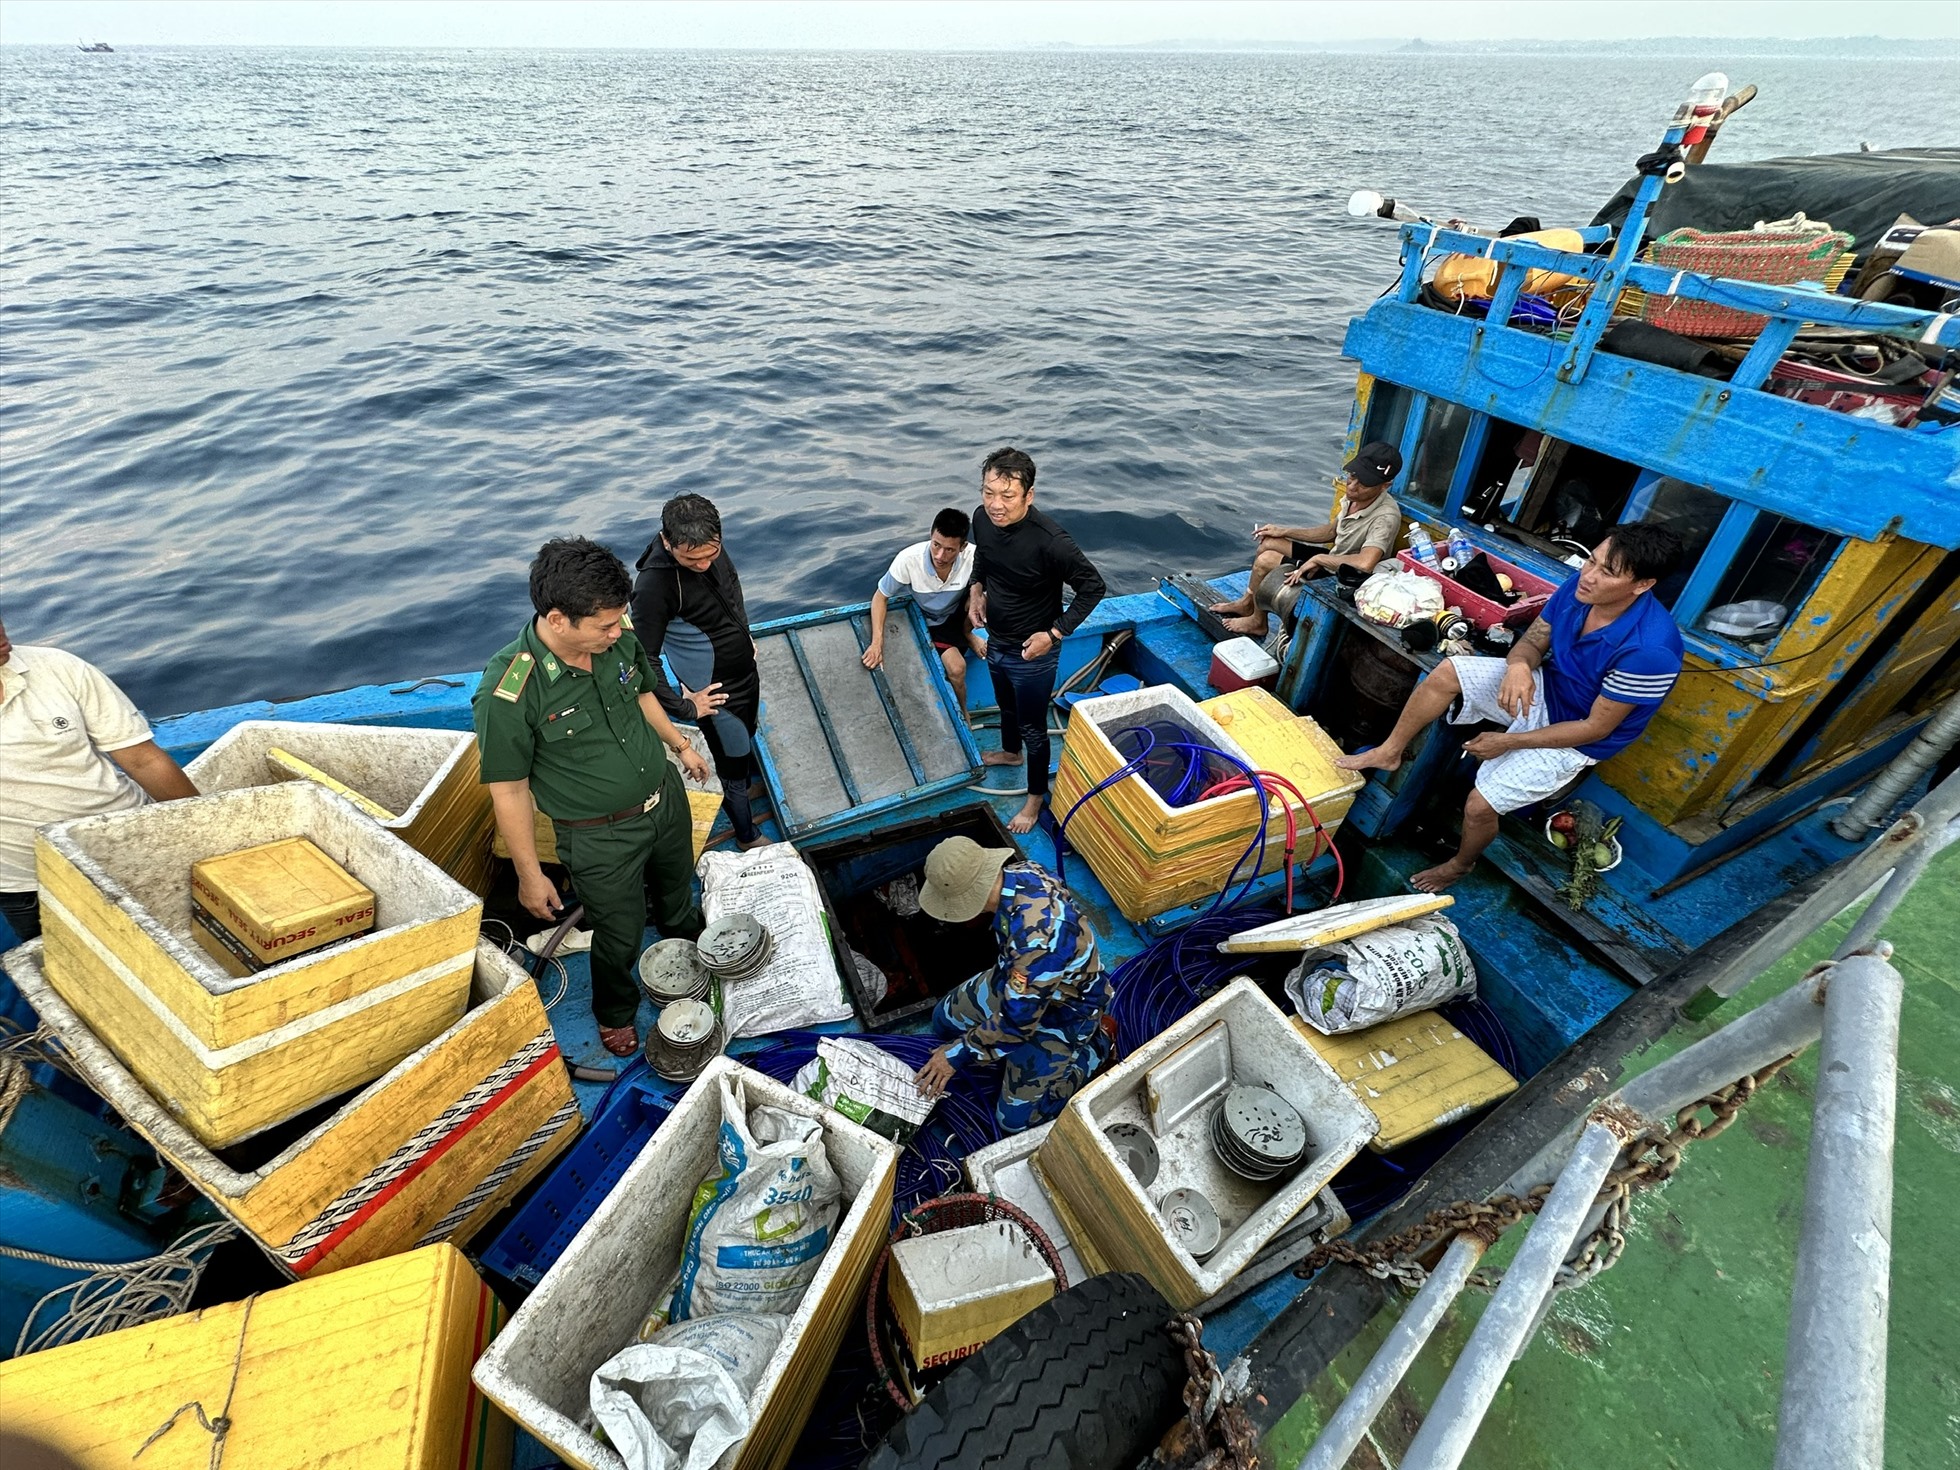 Lực lượng tuần tra BĐBP Quảng Ngãi kiểm tra, phát hiện nhiều đồ vật gốm sứ trên tàu cá BĐ 10546 Ts. Ảnh: Ngọc Viên